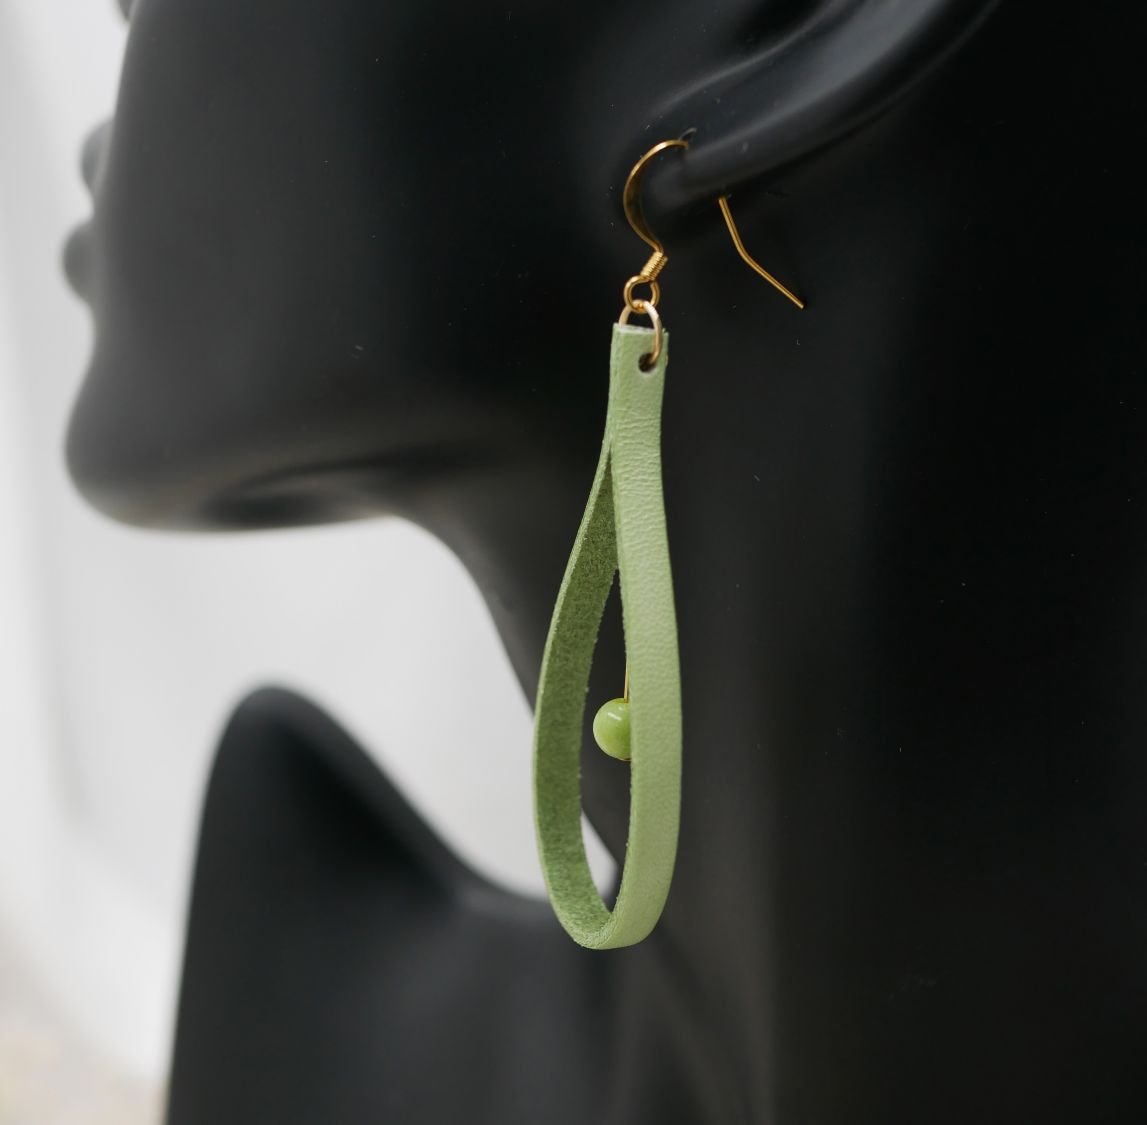 Ohrringe aus mandelgrünem Leder und blassgrünen Edelsteinen